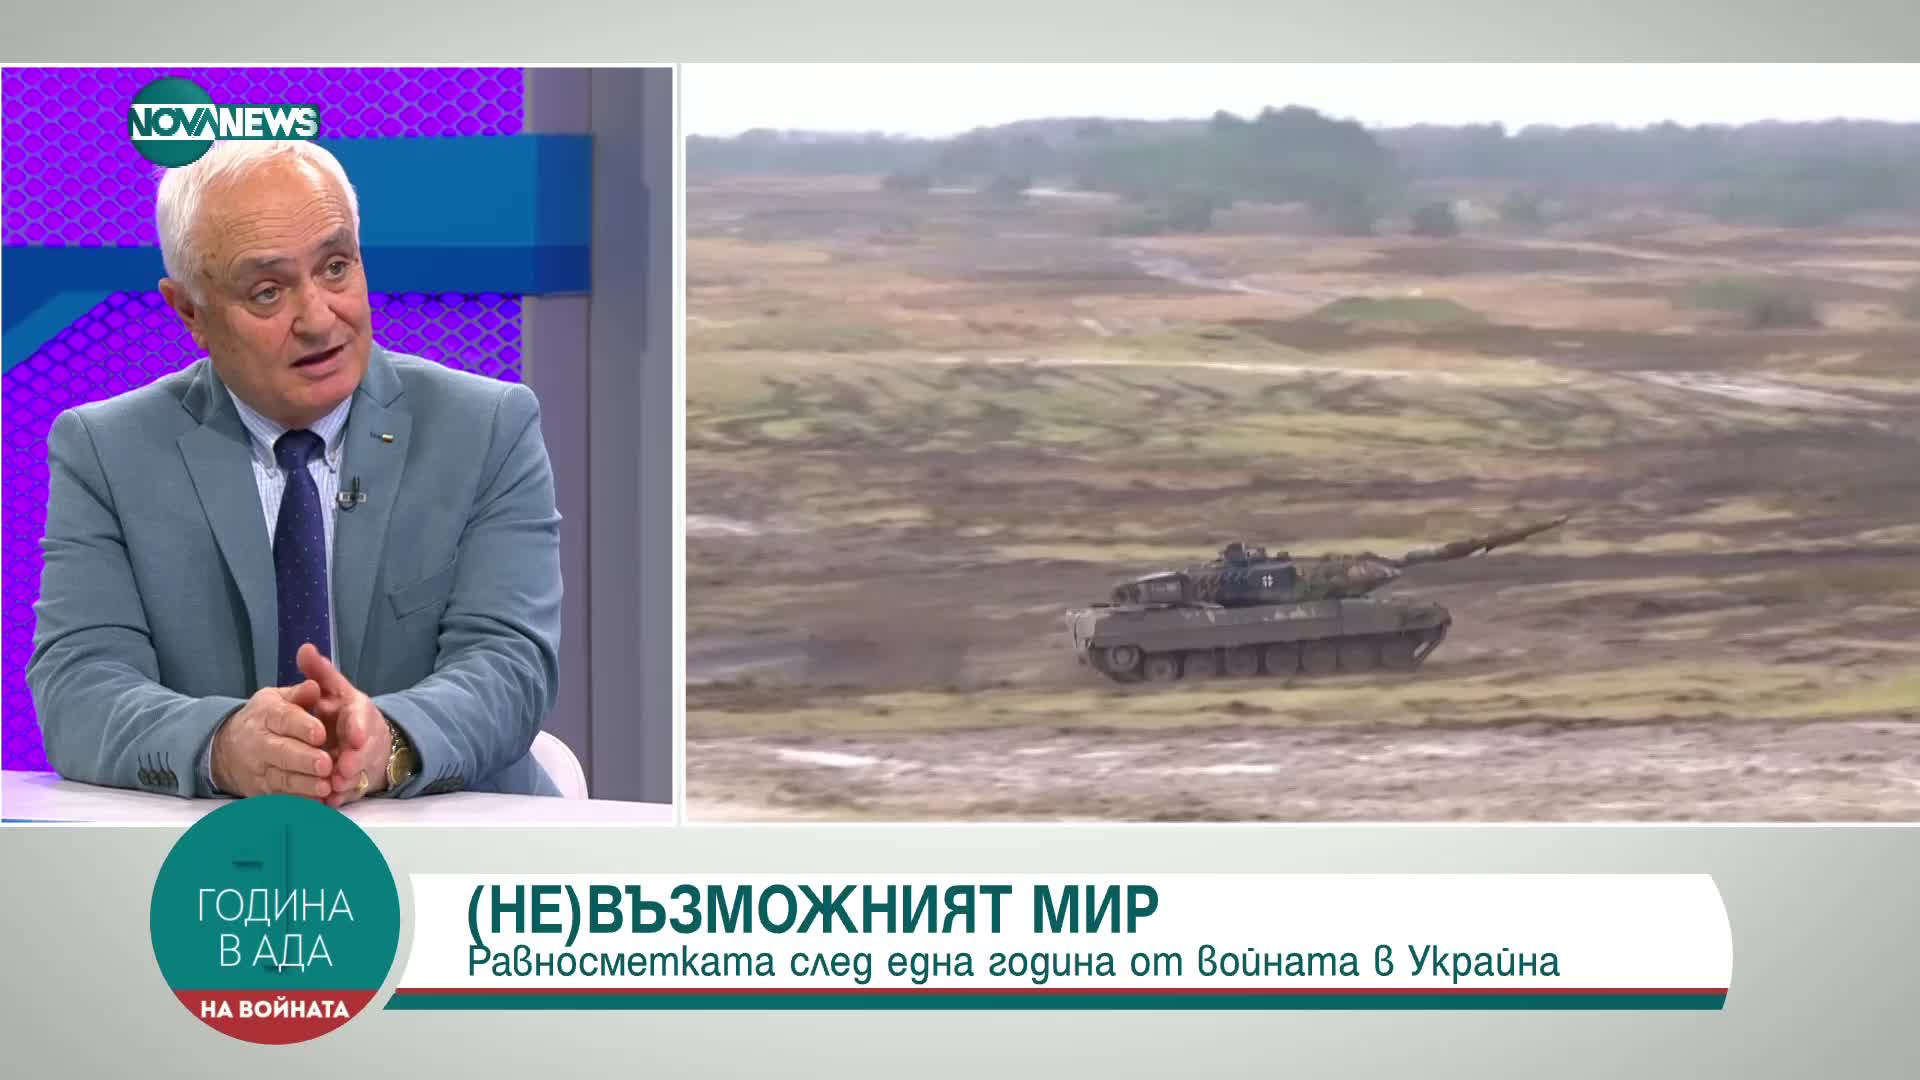 Запрянов: Украйнските въоръжени сили са организирани по натовски стандарти